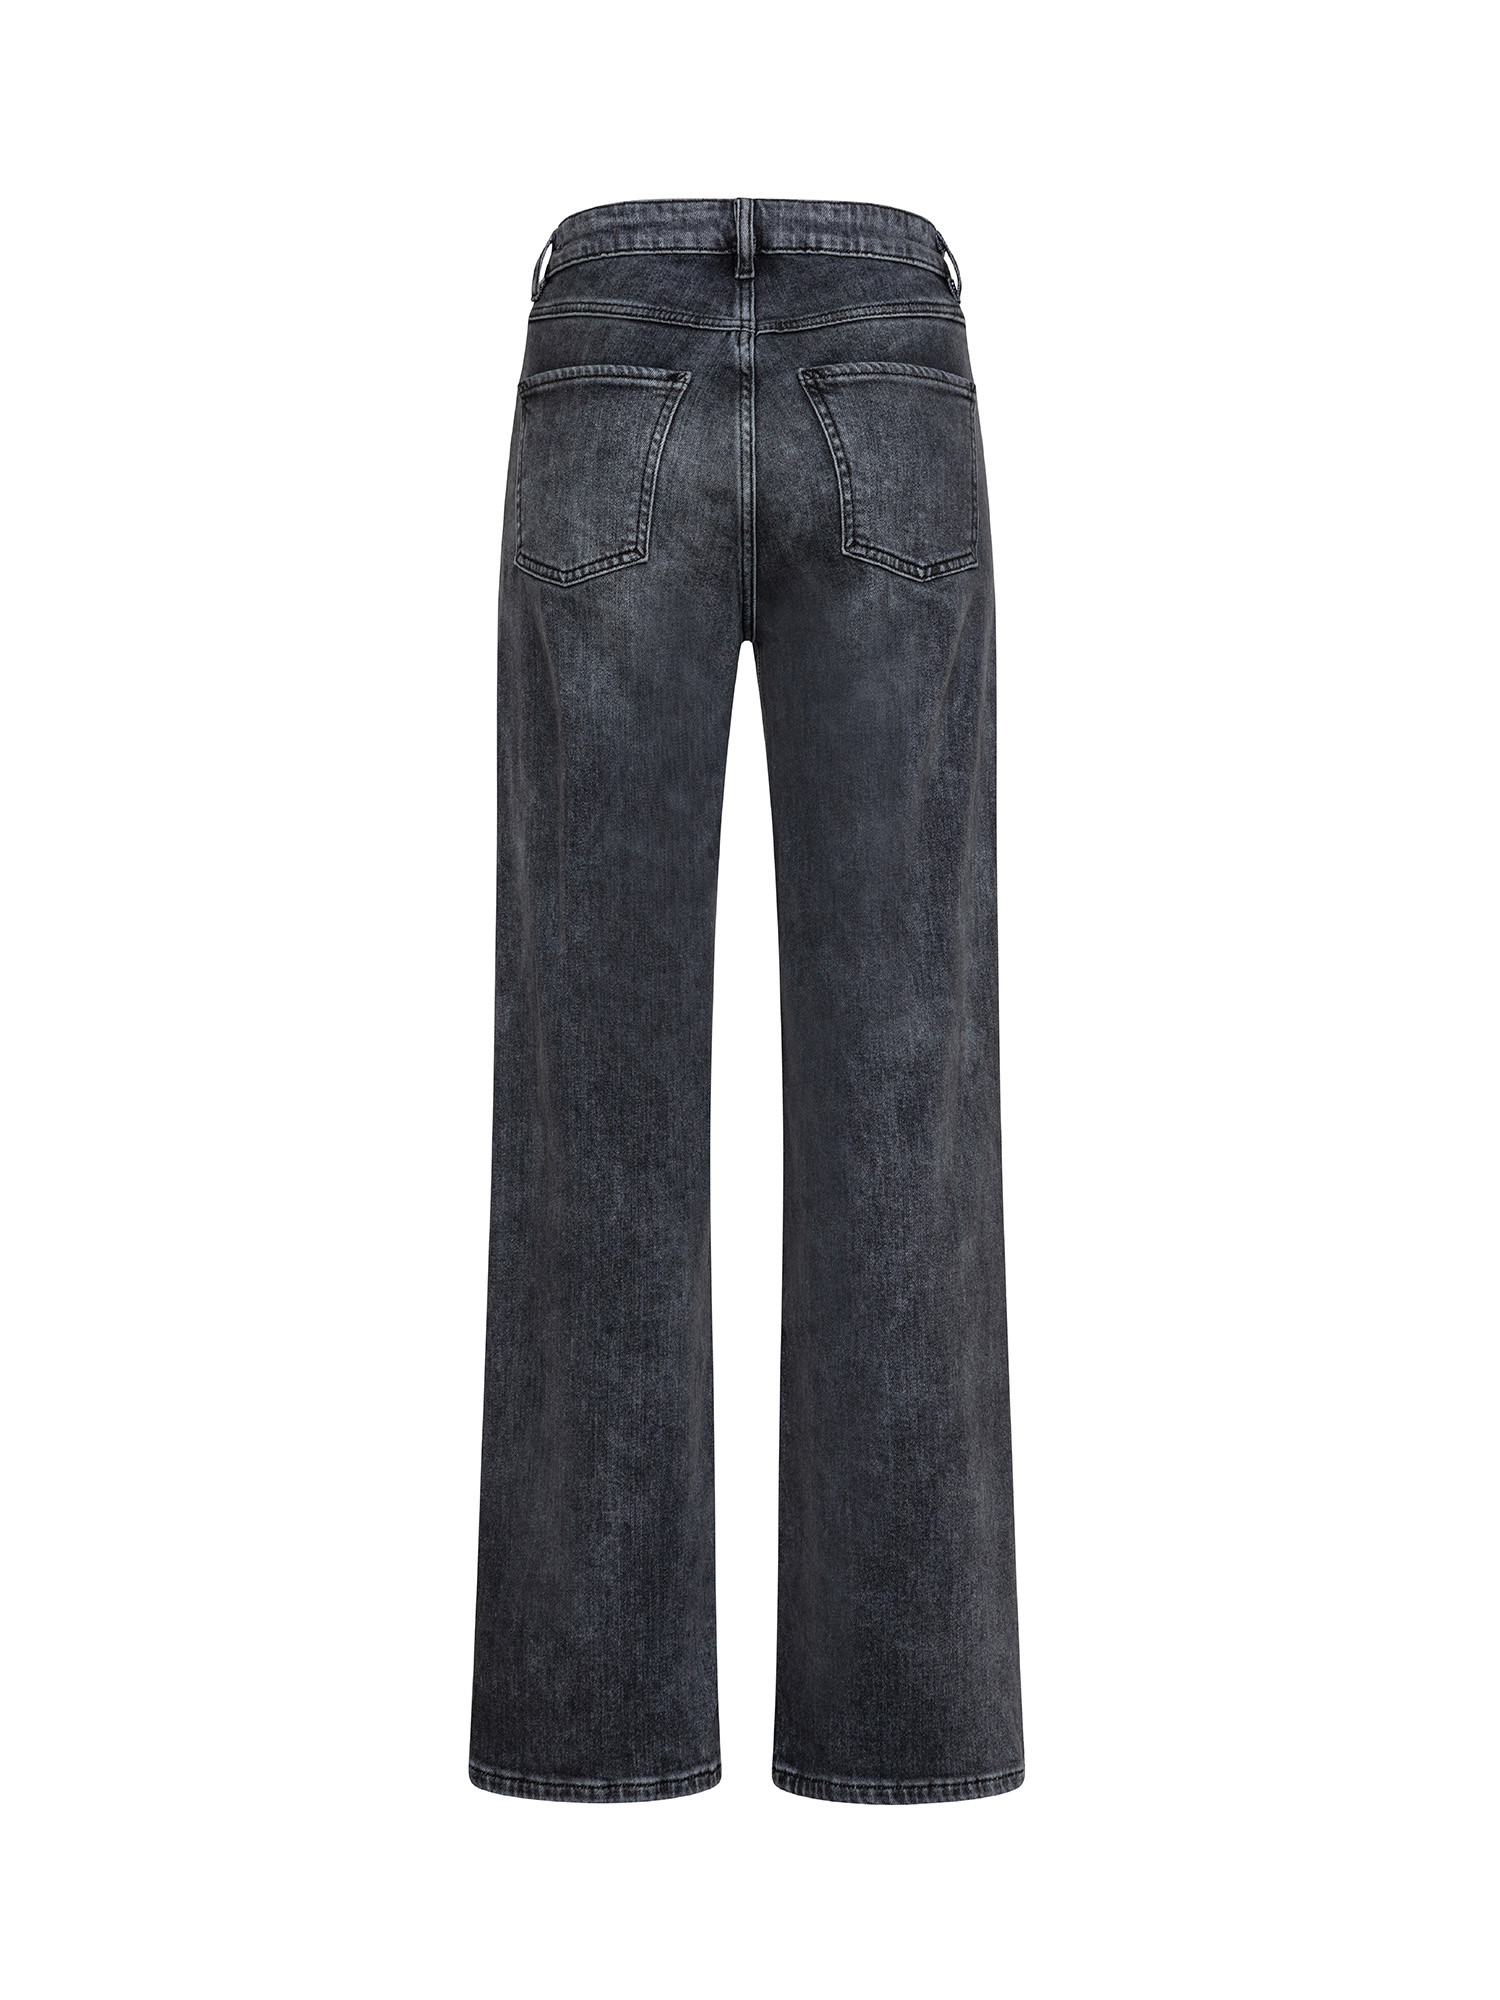 Esprit - Jeans cinque tasche, Grigio scuro, large image number 1